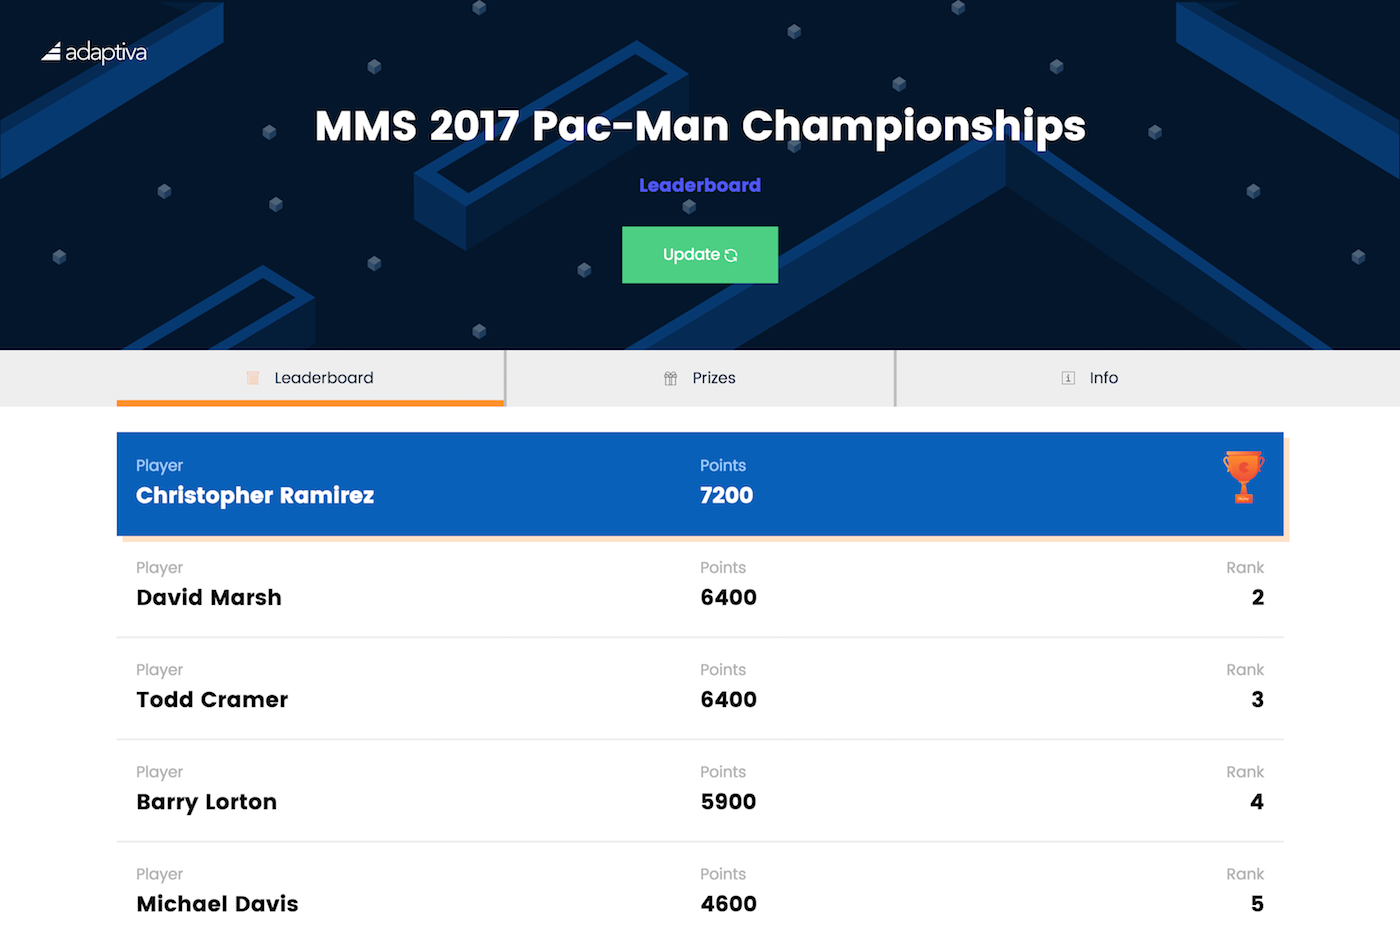 MMS 2017 Pac-Man Leaderboard